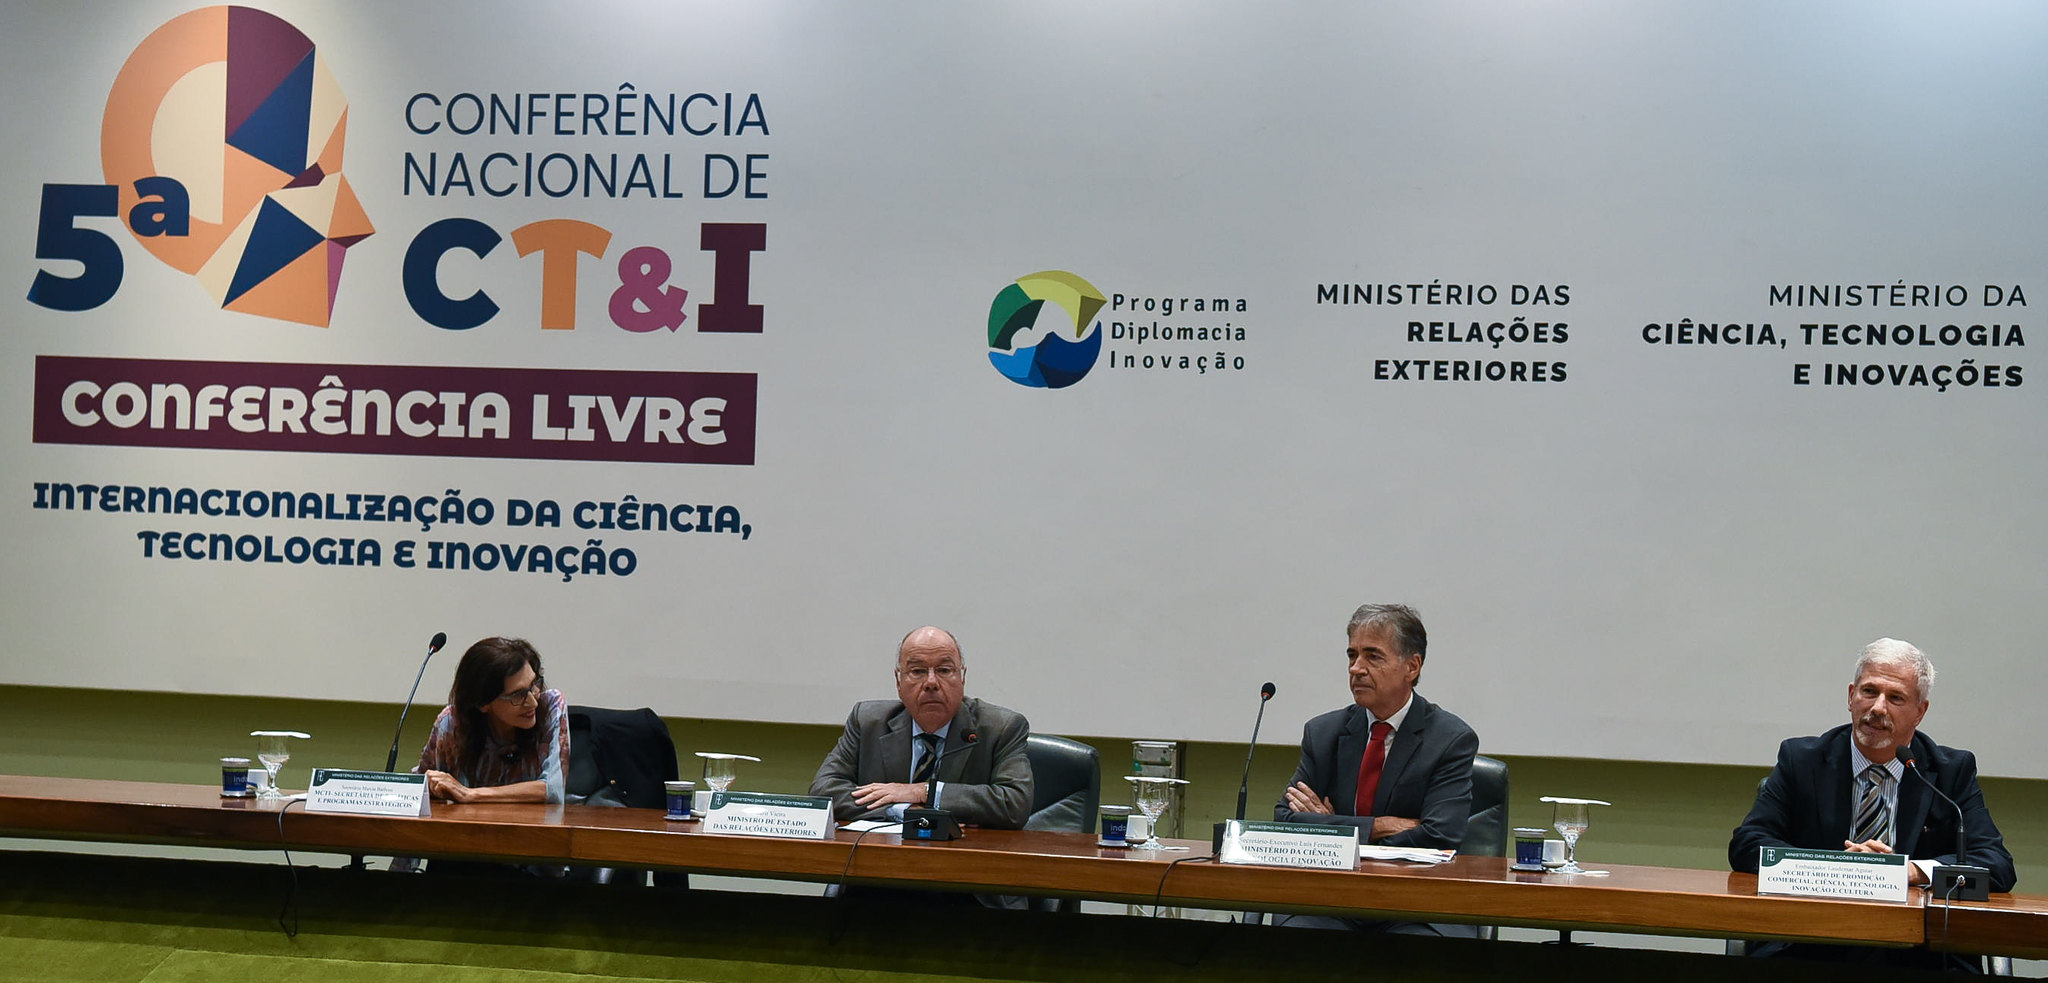 Conferência Livre “Internacionalização da Ciência, Tecnologia e Inovação" faz parte da 5ª Conferência Nacional, marcada para 4, 5 e 6 de junho, em Brasília